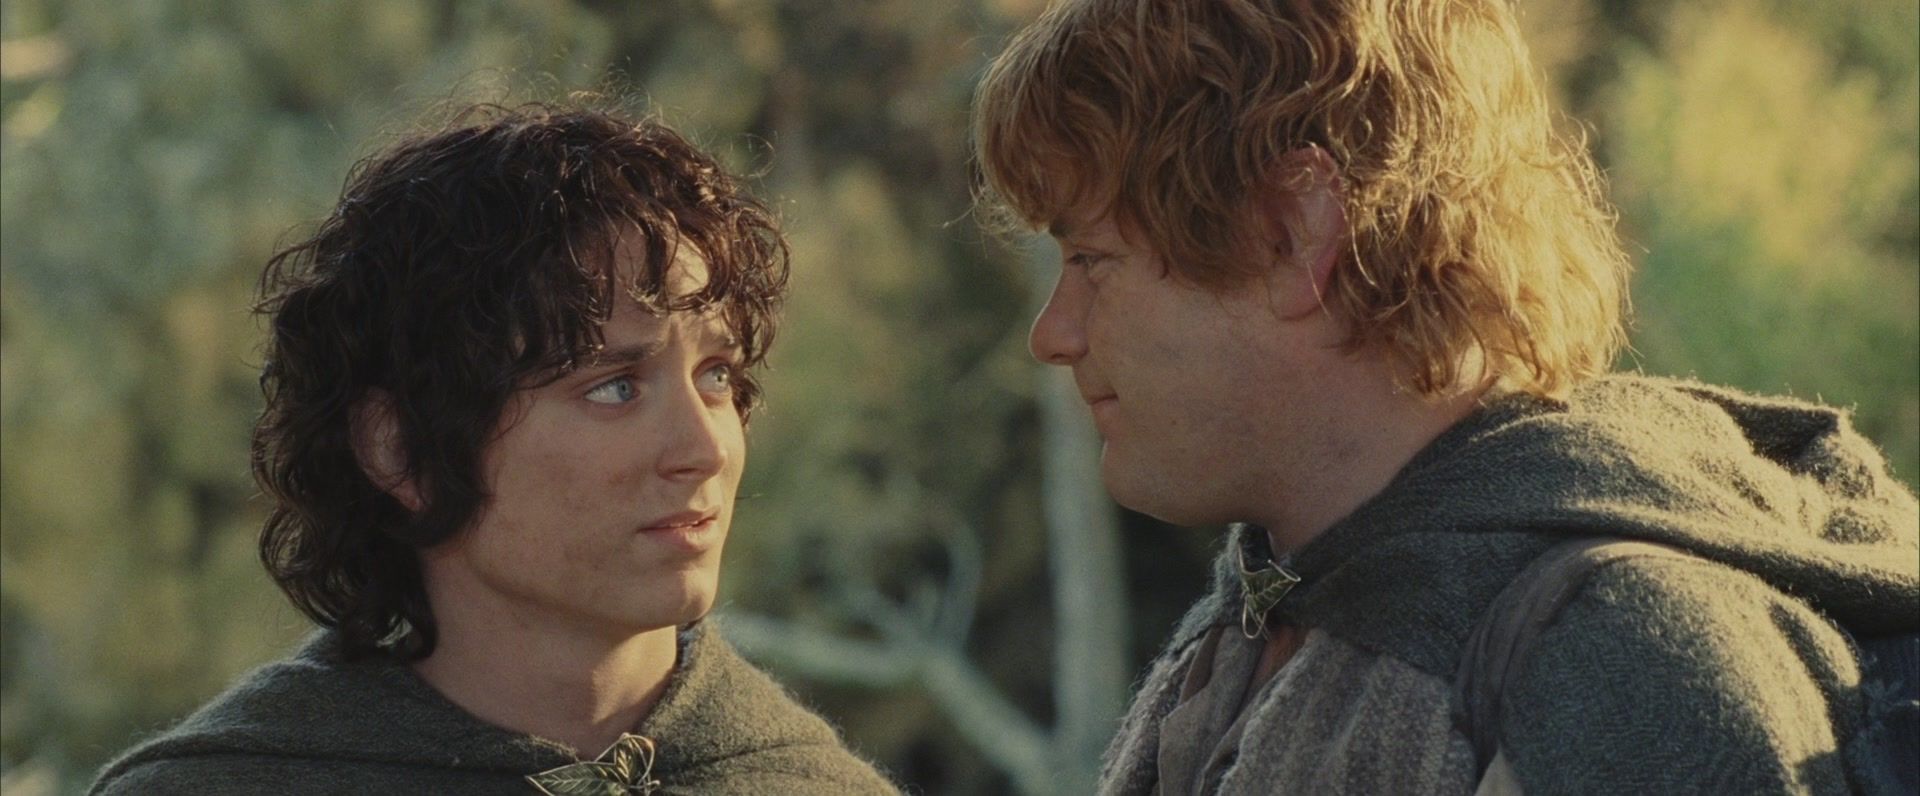 Фродо, ты до сих пор размещаешься только в Директе? 